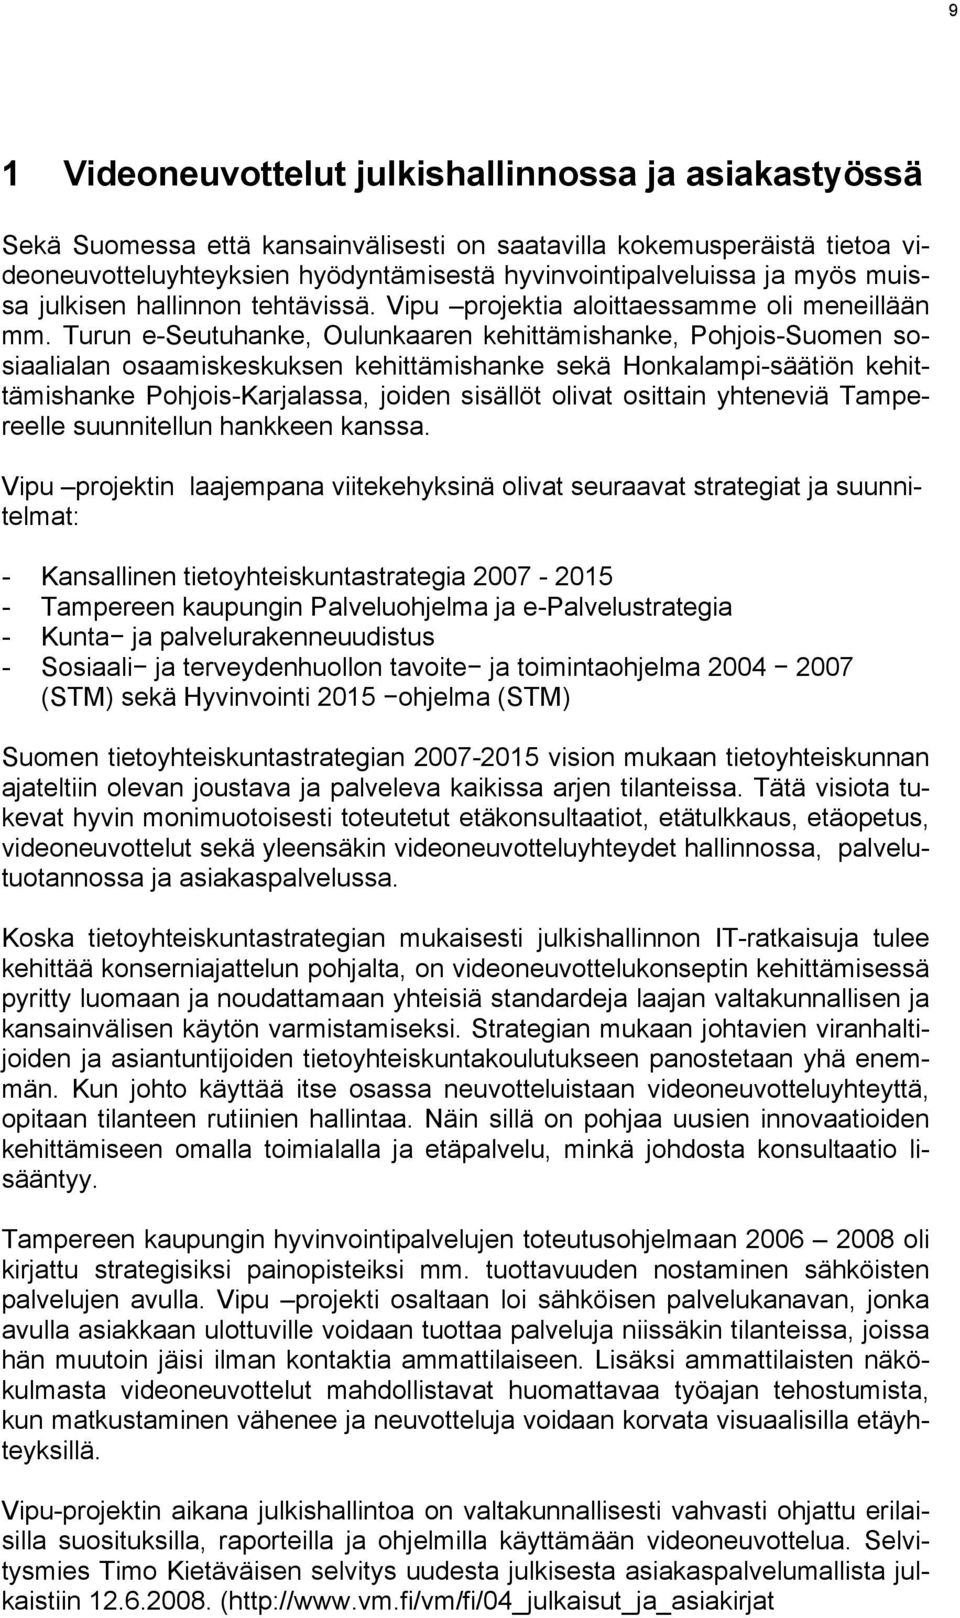 Turun e-seutuhanke, Oulunkaaren kehittämishanke, Pohjois-Suomen sosiaalialan osaamiskeskuksen kehittämishanke sekä Honkalampi-säätiön kehittämishanke Pohjois-Karjalassa, joiden sisällöt olivat